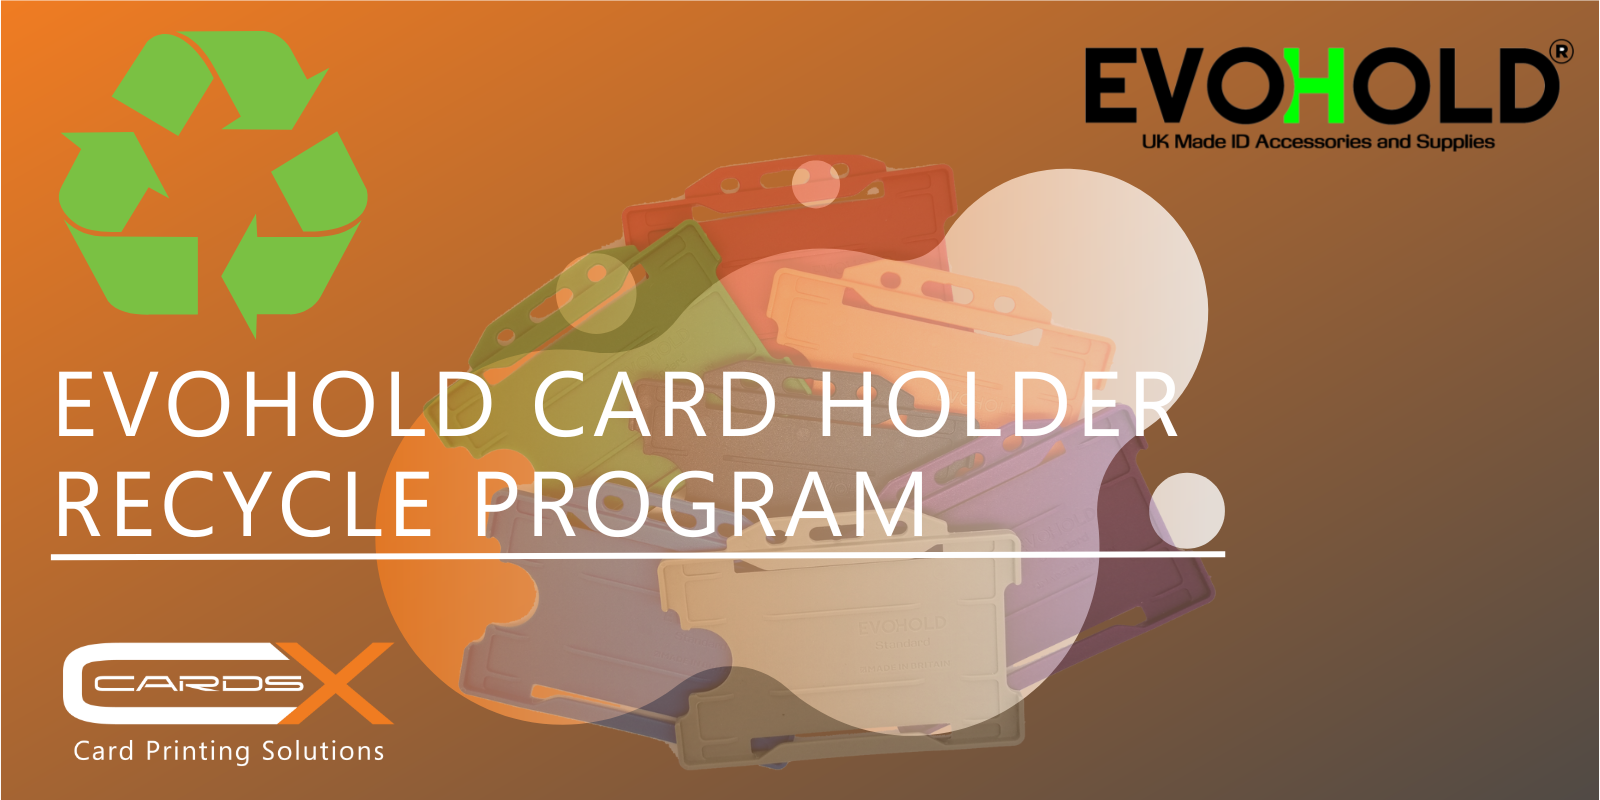 Evohold card holder recycle program